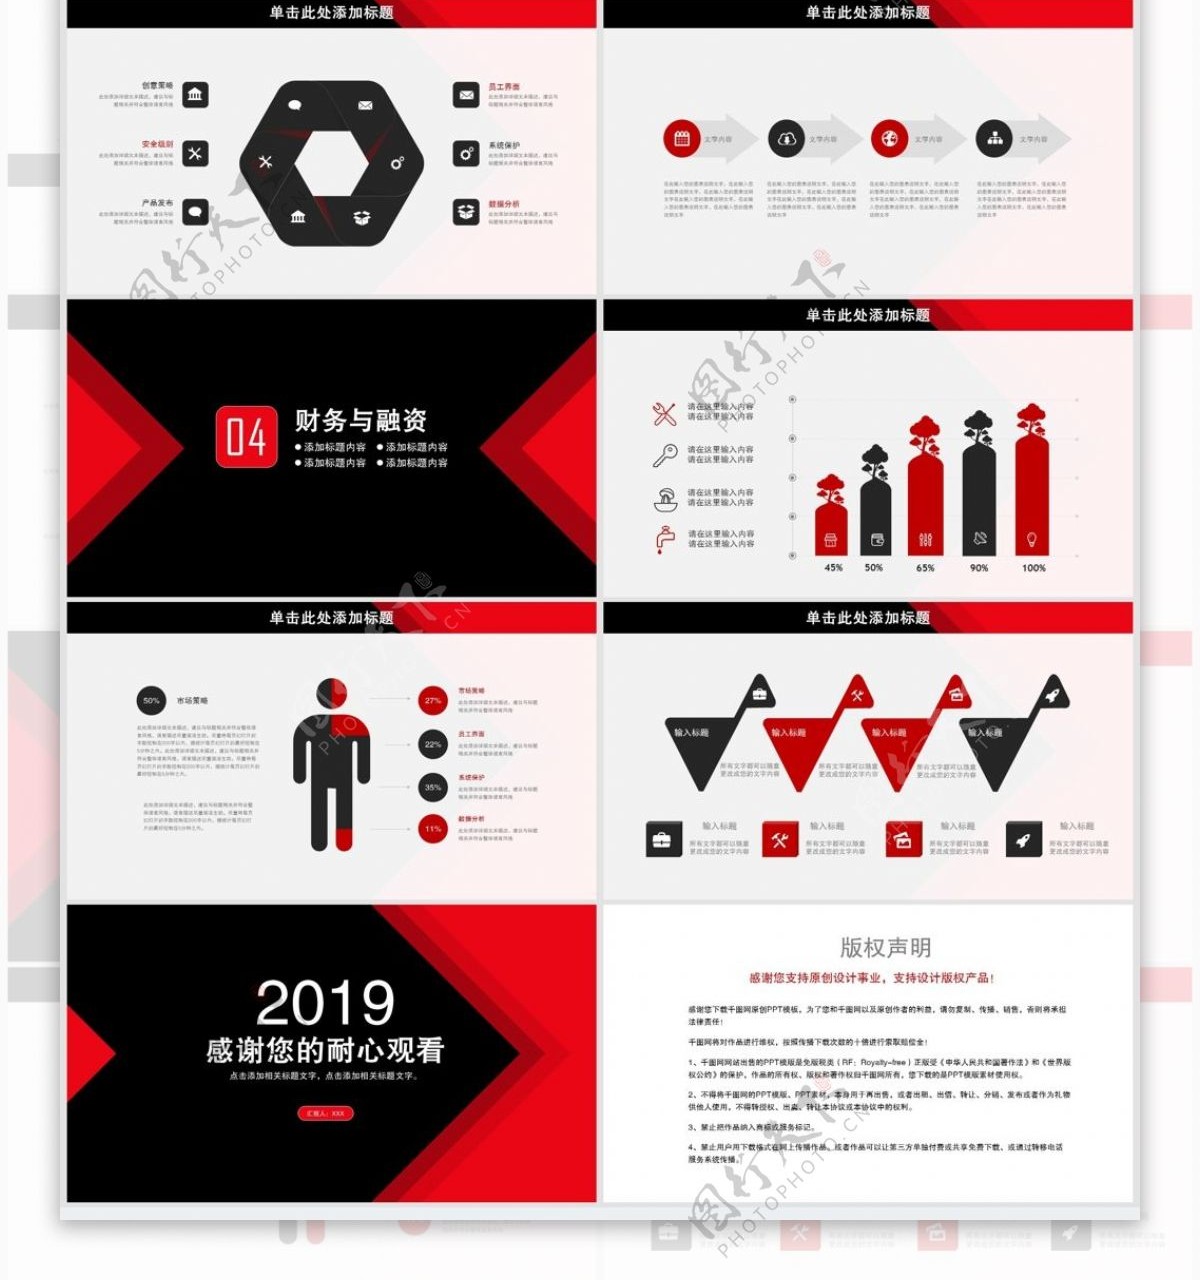 2019黑红简约企业宣传PPT模板